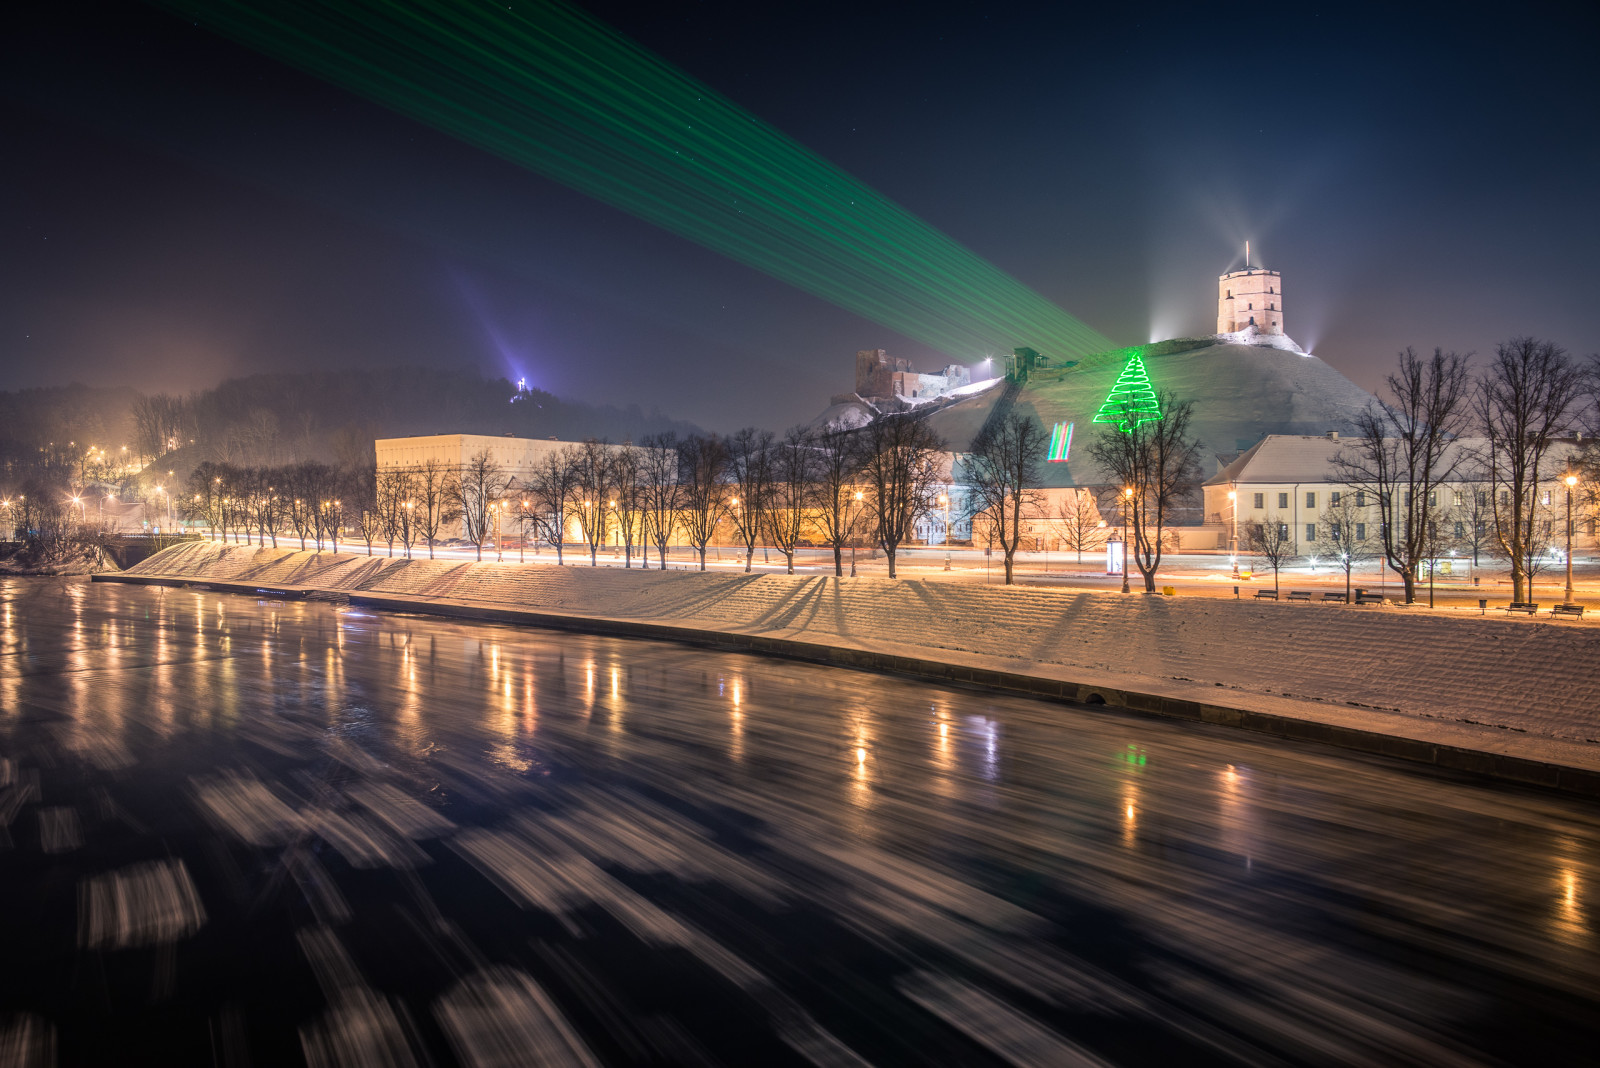 立陶宛, 维尔纽斯, 节日激光投影